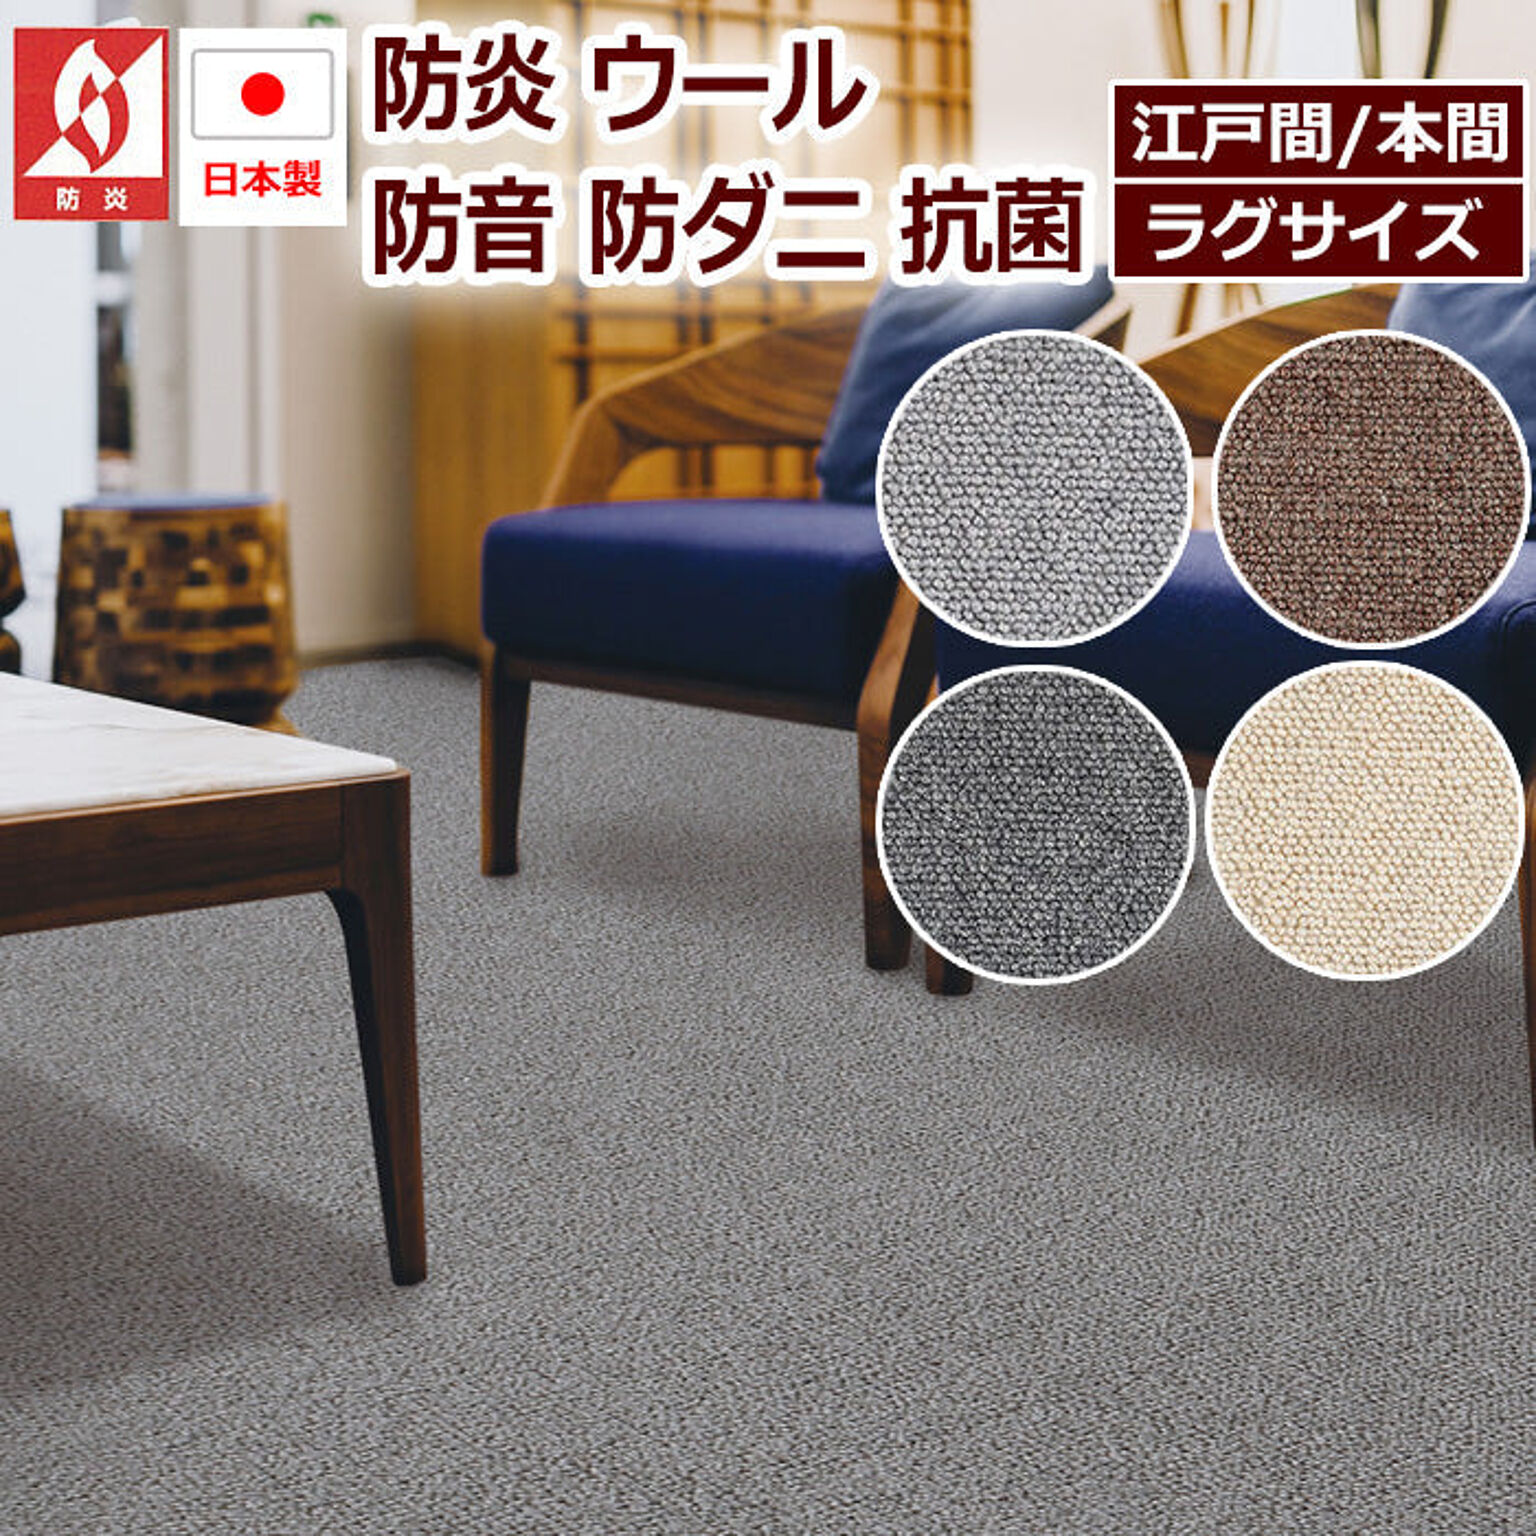 ラグ ラグマット 絨毯 日本製 防炎 防音 ウール100% prevell プレーベル デイル 江戸間8畳 約352×352cm カーペット